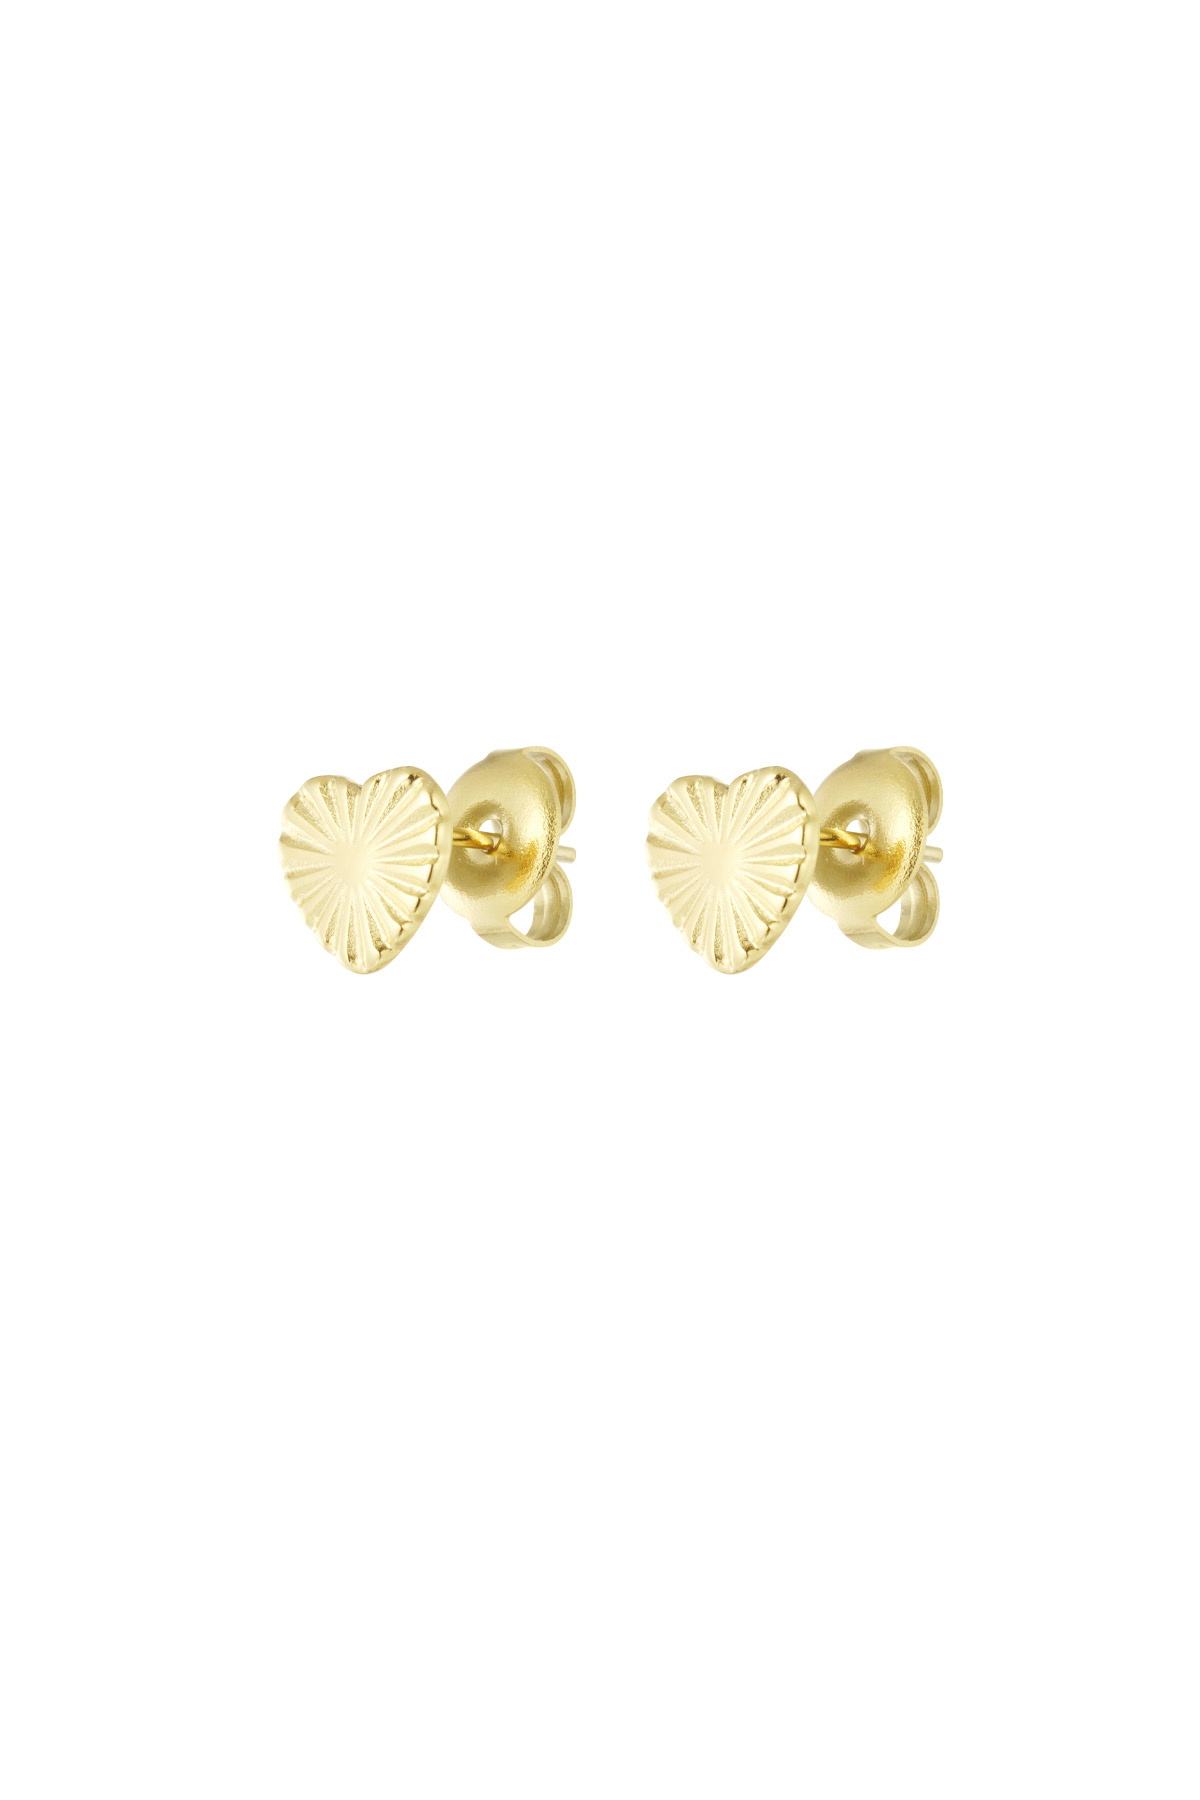 Herzförmige Ohrringe mit Muster – Gold